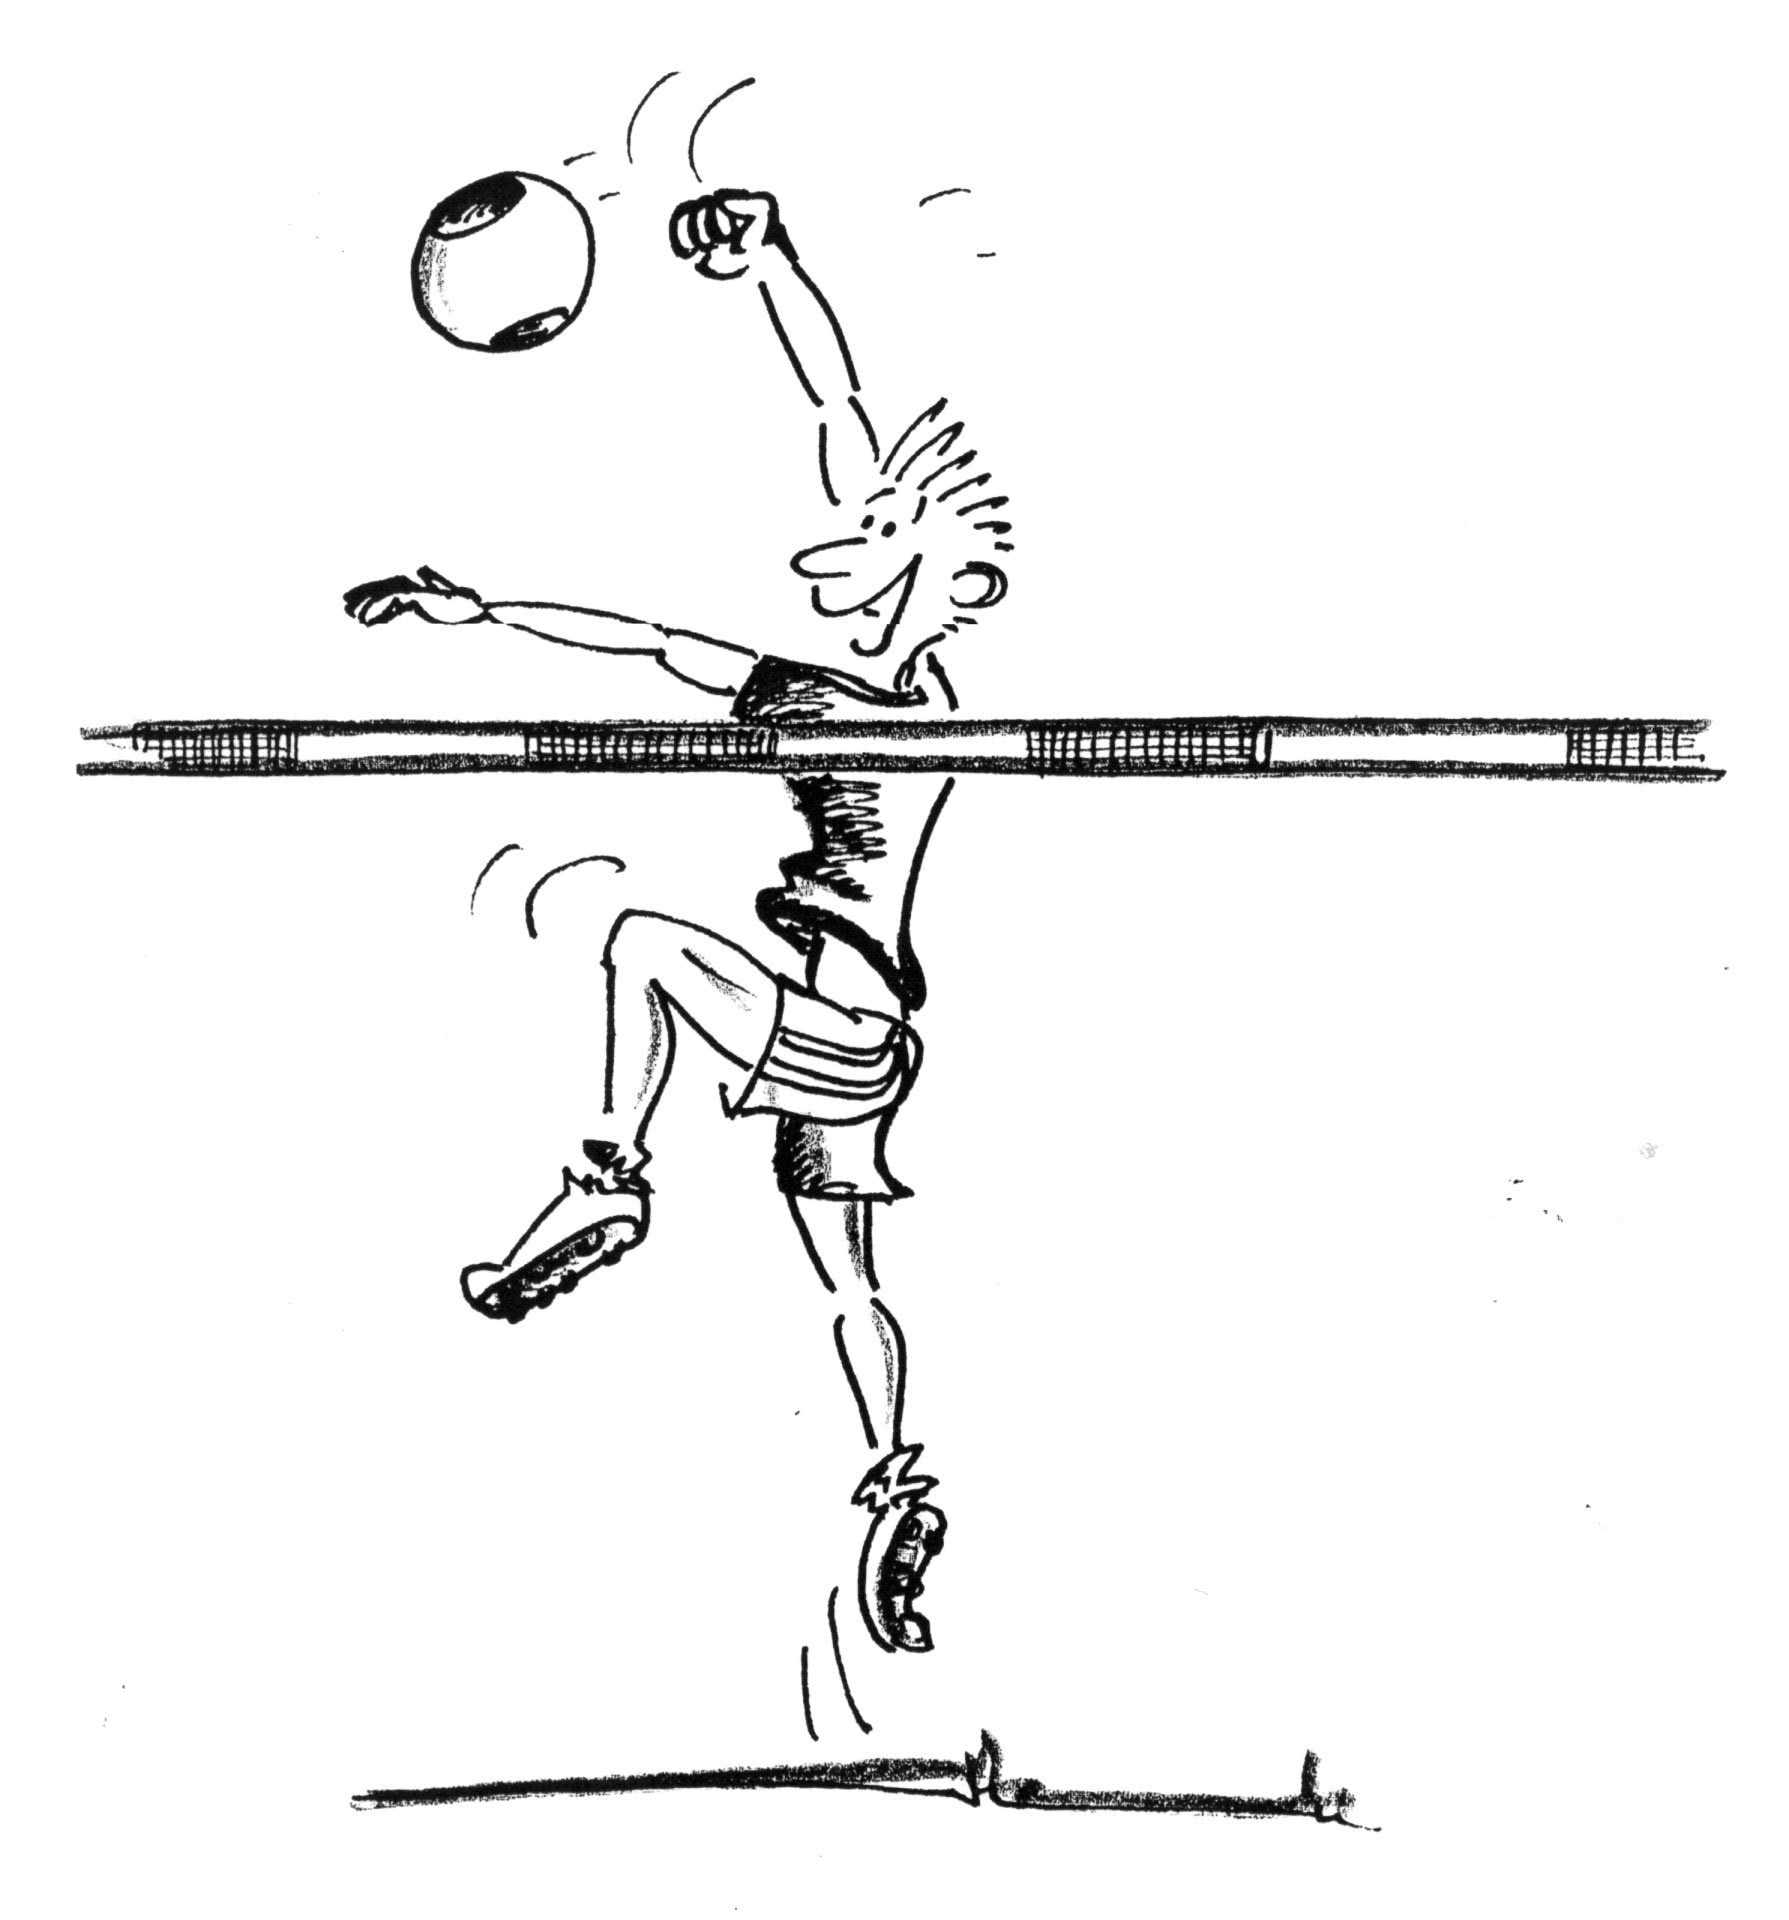 Dessin: un joueur frappe un ballon par-dessus la corde.